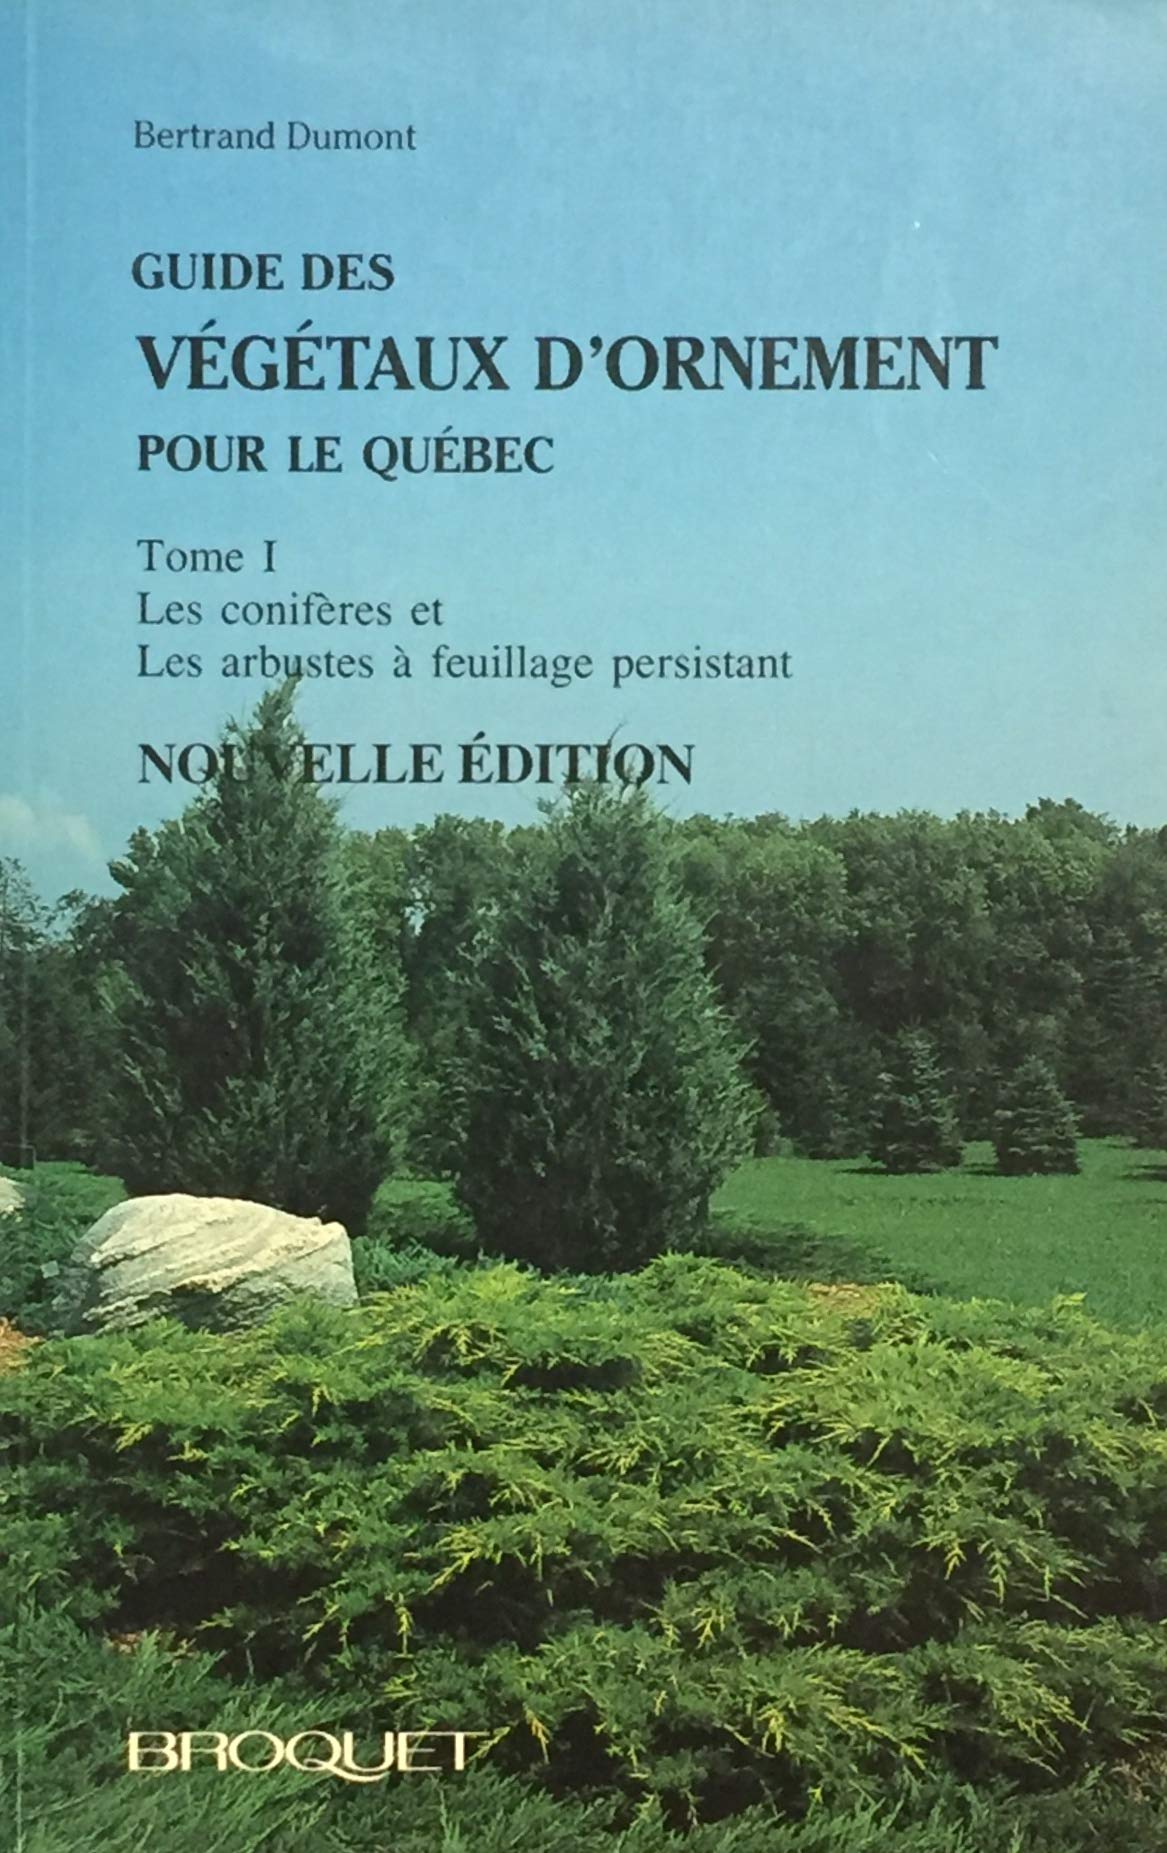 Guide des végétaux d'ornement pour le Québec # 1 : Les conifères et les arbustes à feuillage persistant - Bertrand Dumont